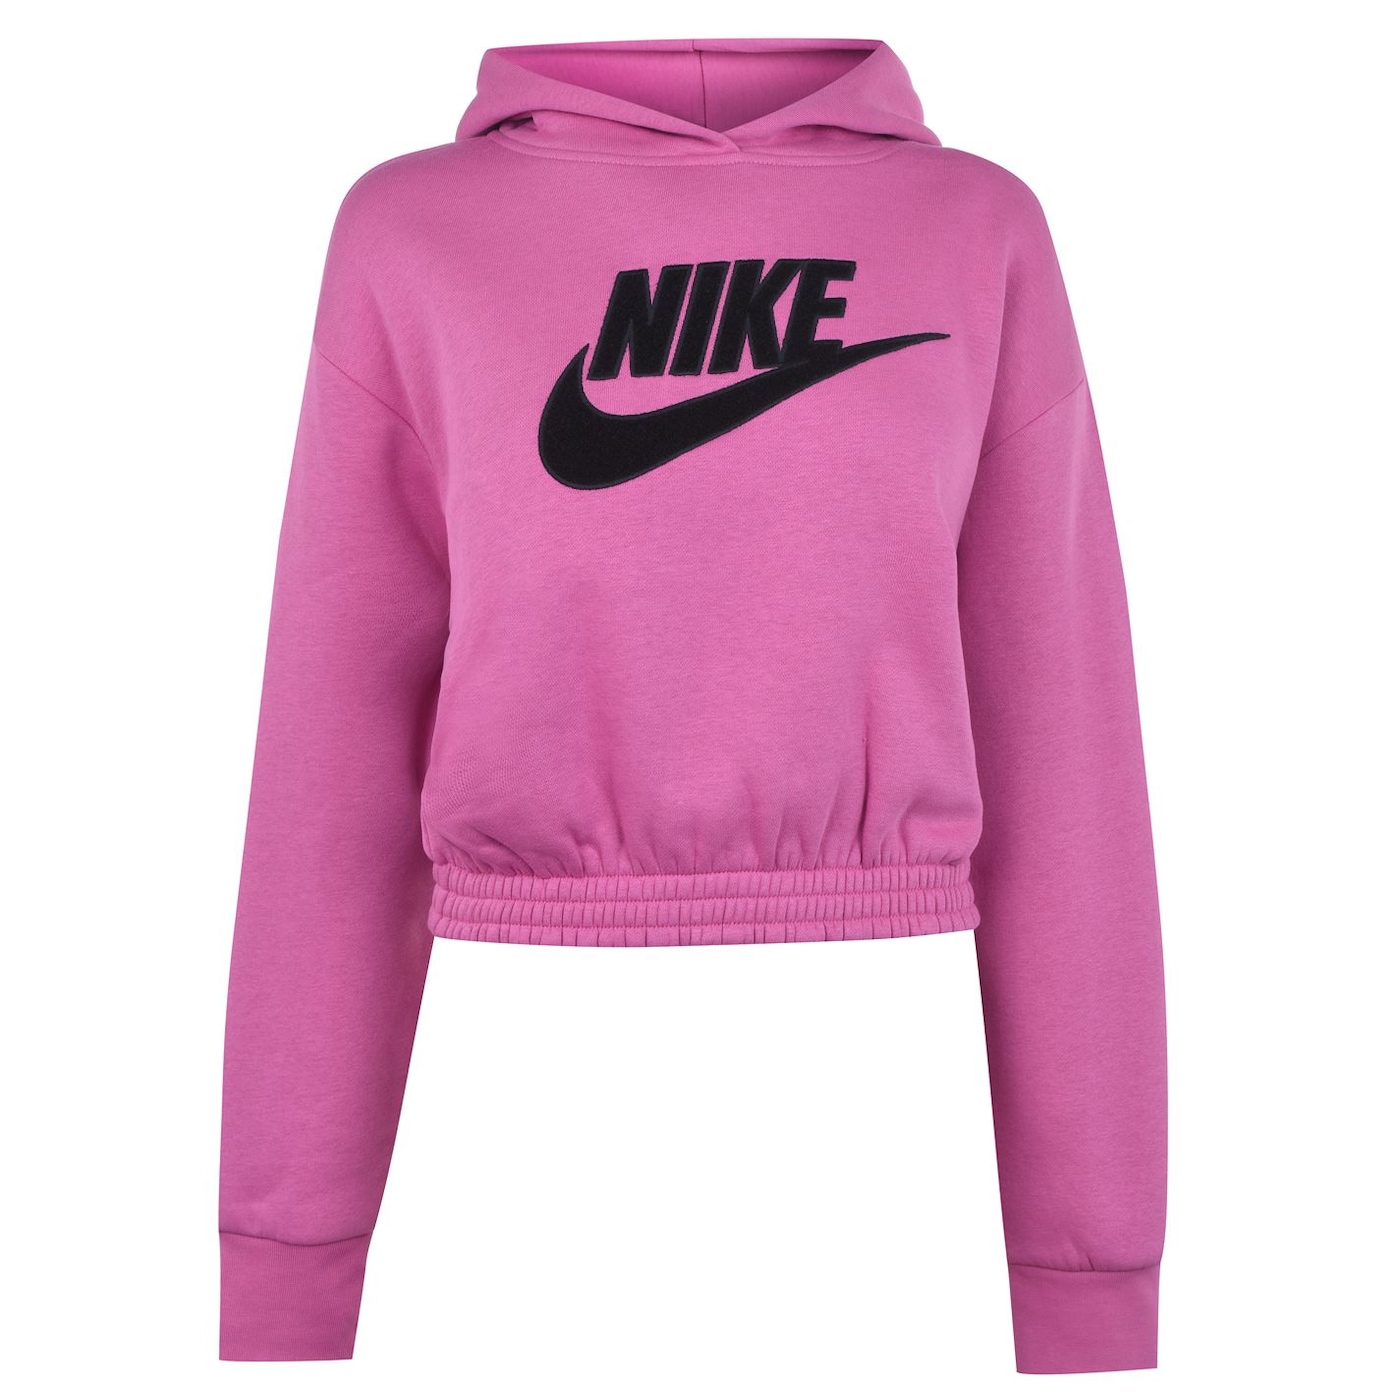 Жени  Дамско облекло  Суичъри  Блузи кроп Nike Sportswear Icon Clash Fleece Hoodie Ladies 1132138-6749893